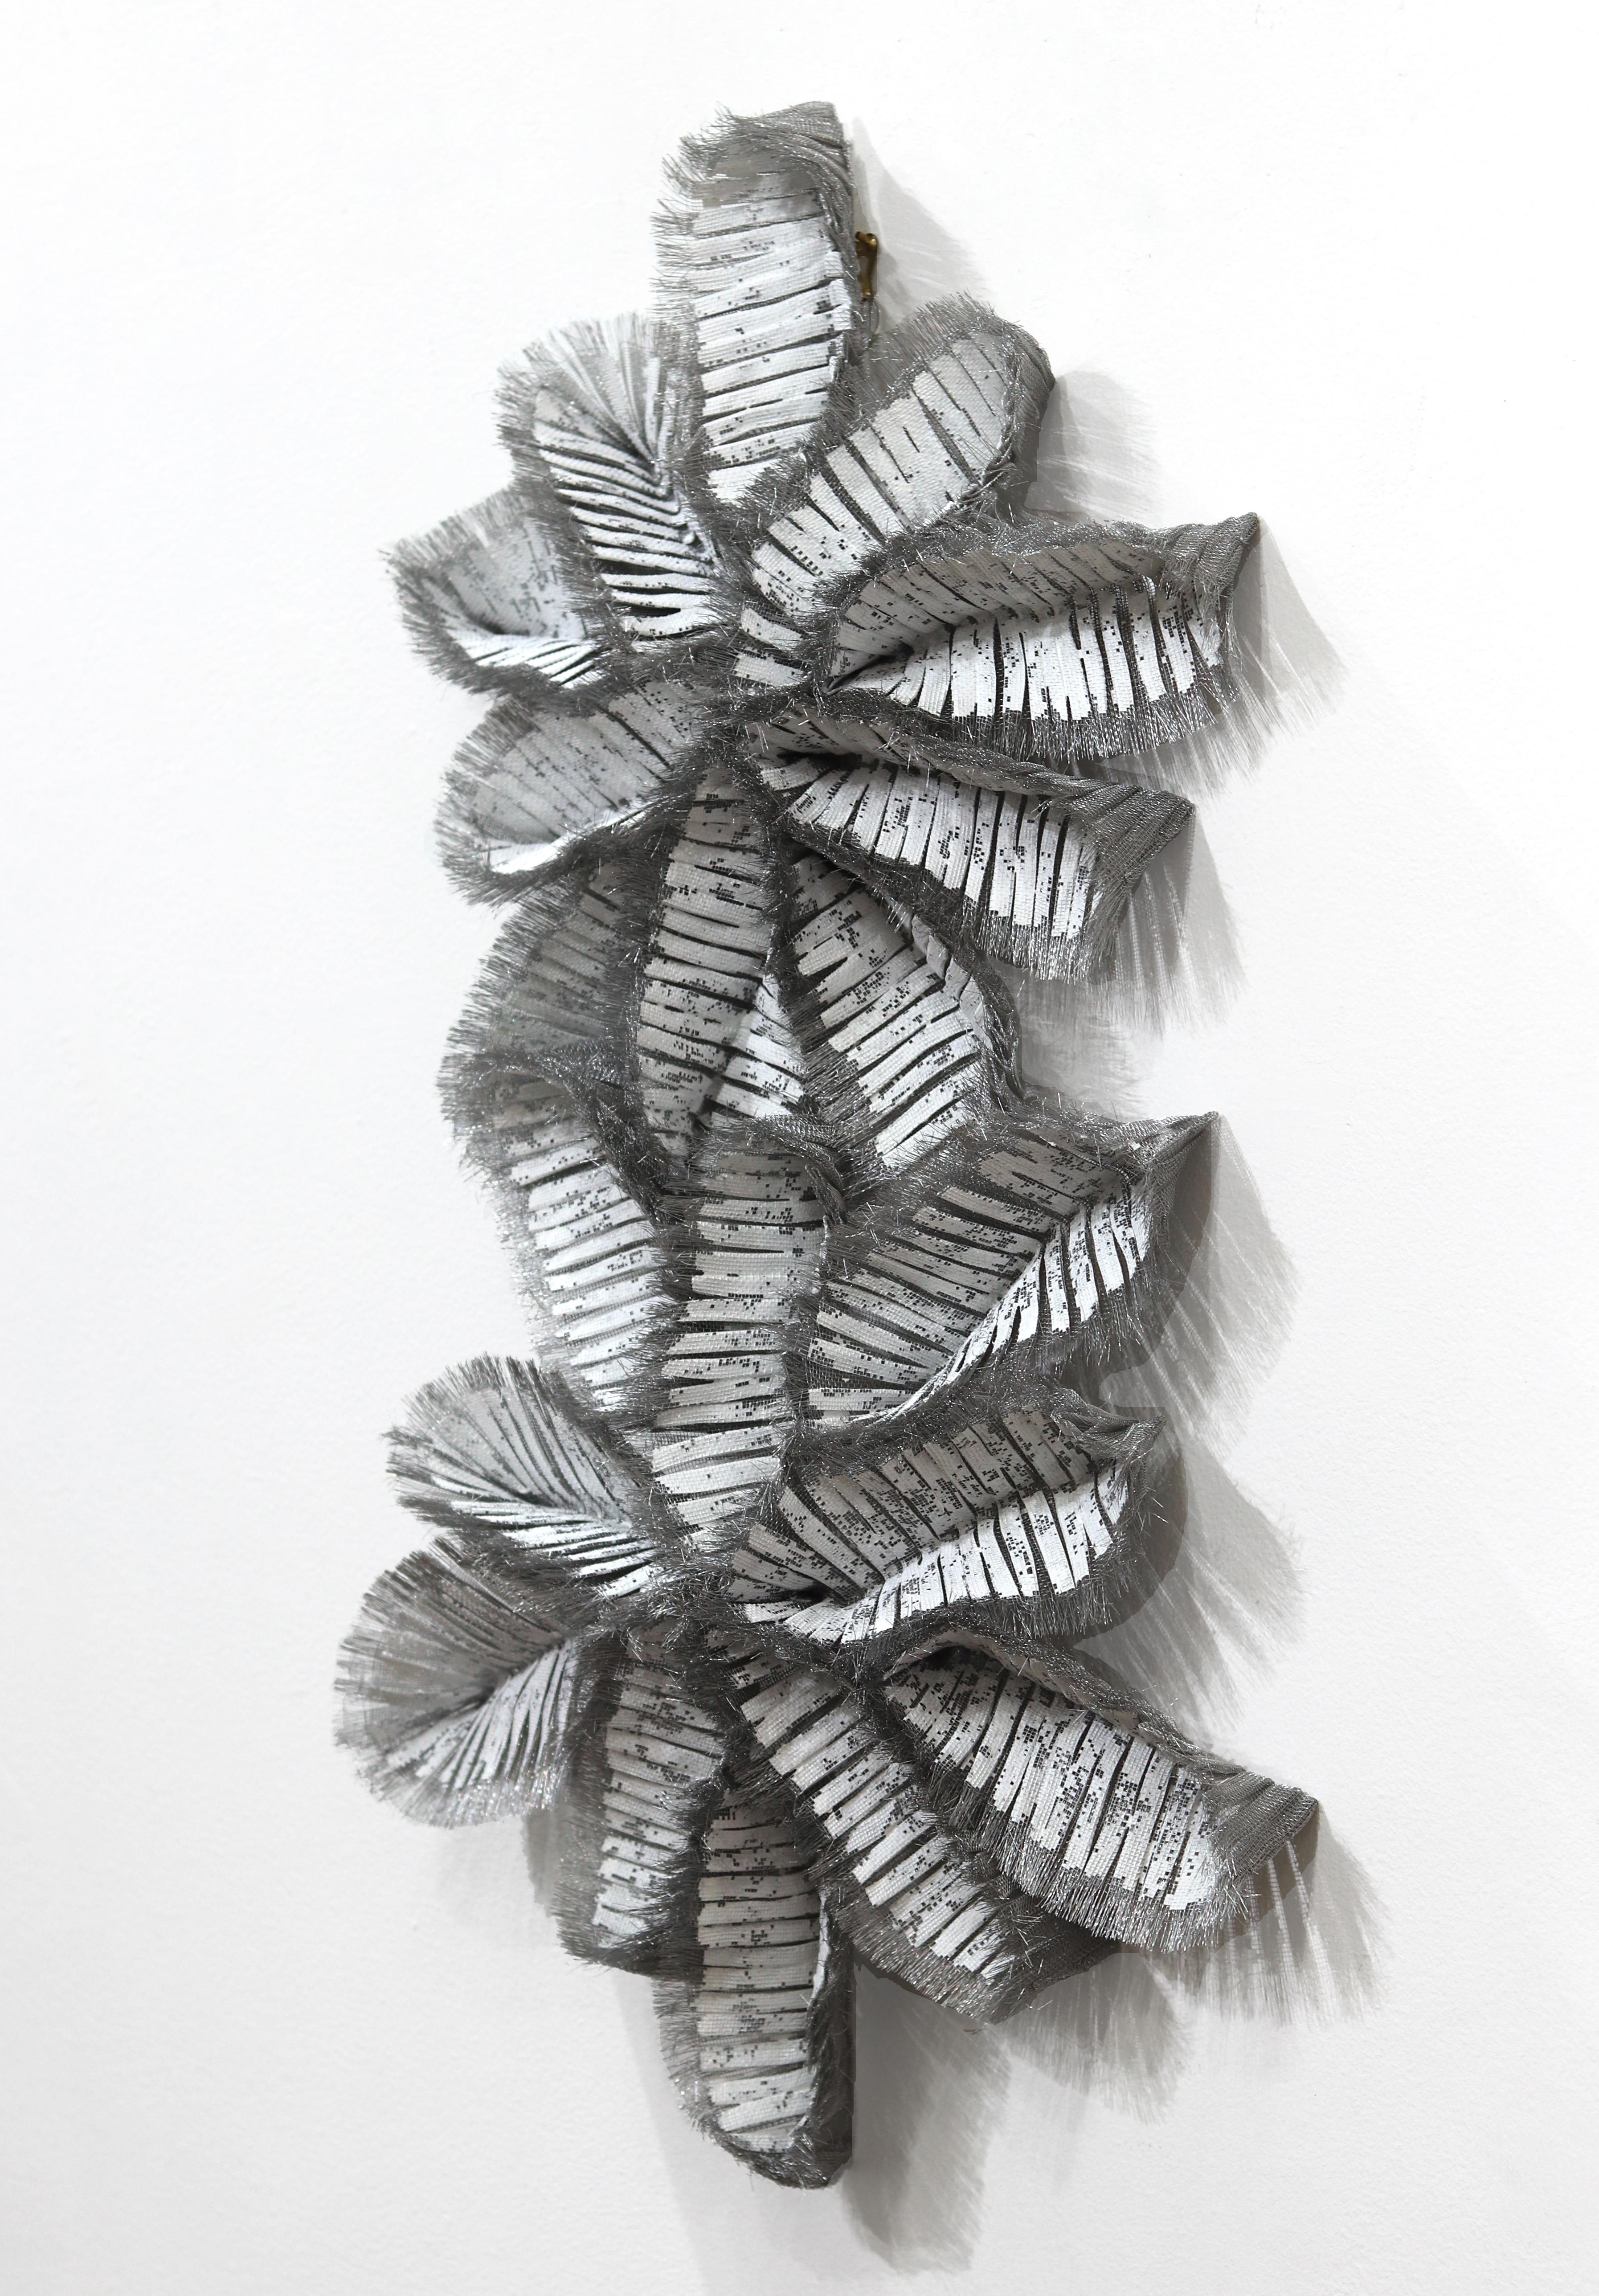 Atticus Adams' organisch komponierte, moderne Metallskulpturen verkörpern die transformative Kraft der zeitgenössischen Kunst und veranschaulichen die Schaffung von Schönheit, Bedeutung und emotionaler Wirkung aus industriellen Materialien. Er